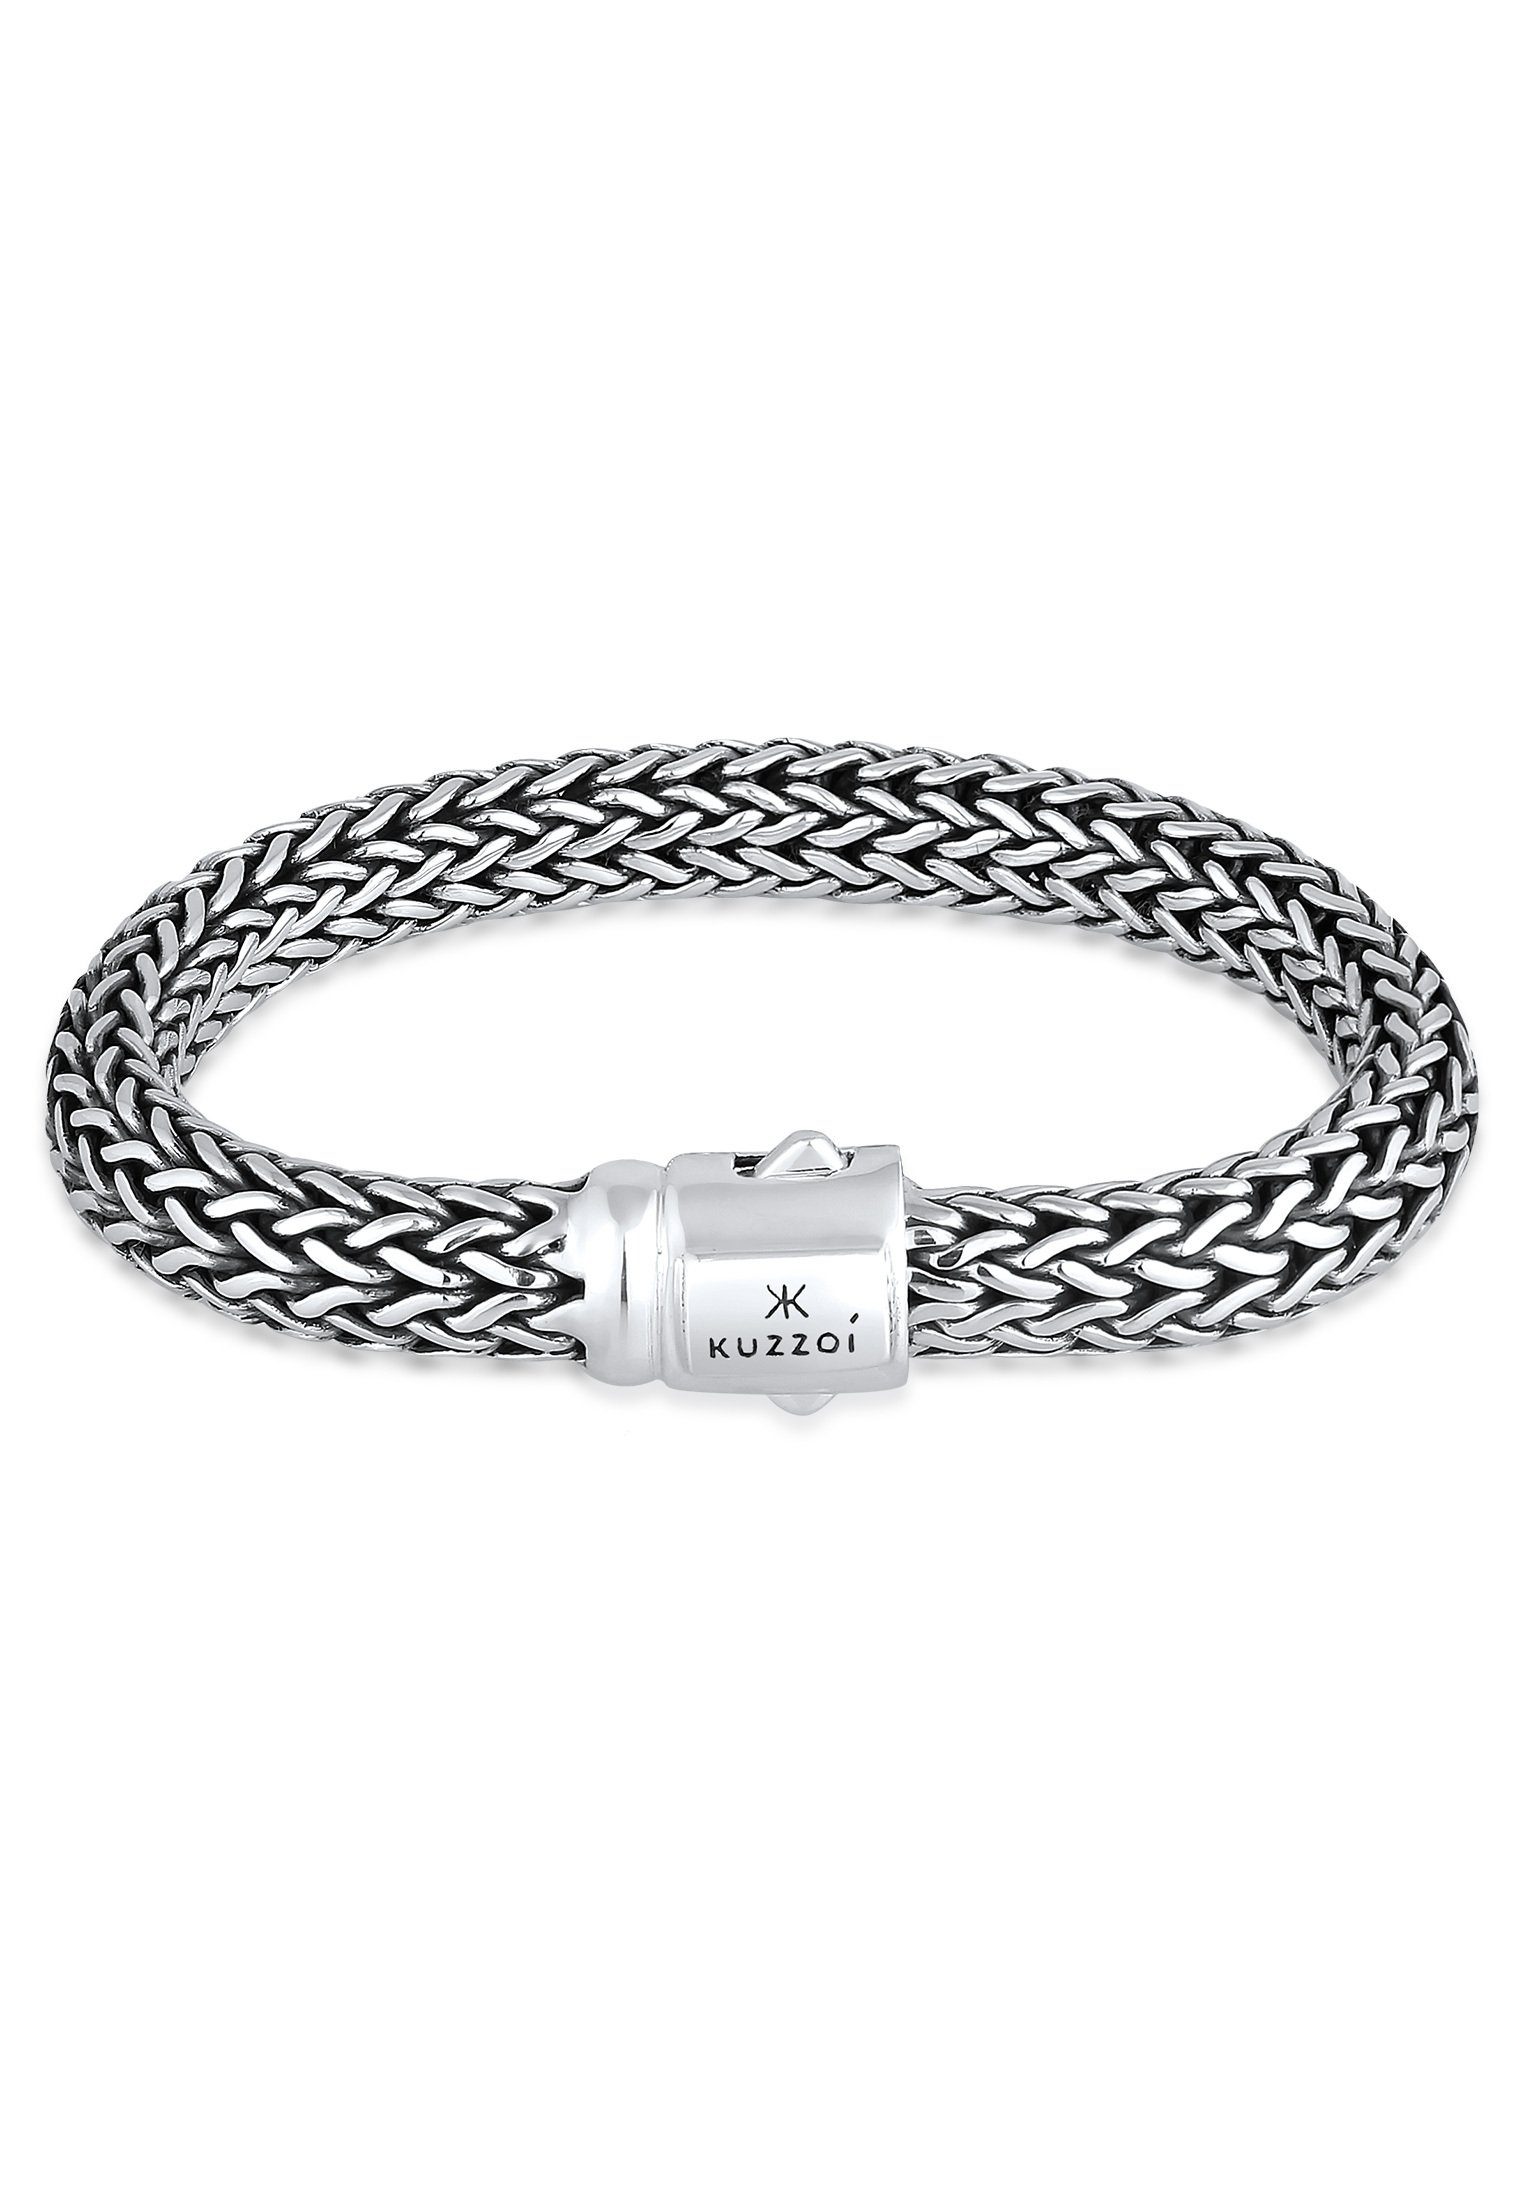 Kuzzoi Armband Cool In Basic unisex sehr Silber, Gliederarmband Juwelier-Qualität hochwertiger 925 gefertigt